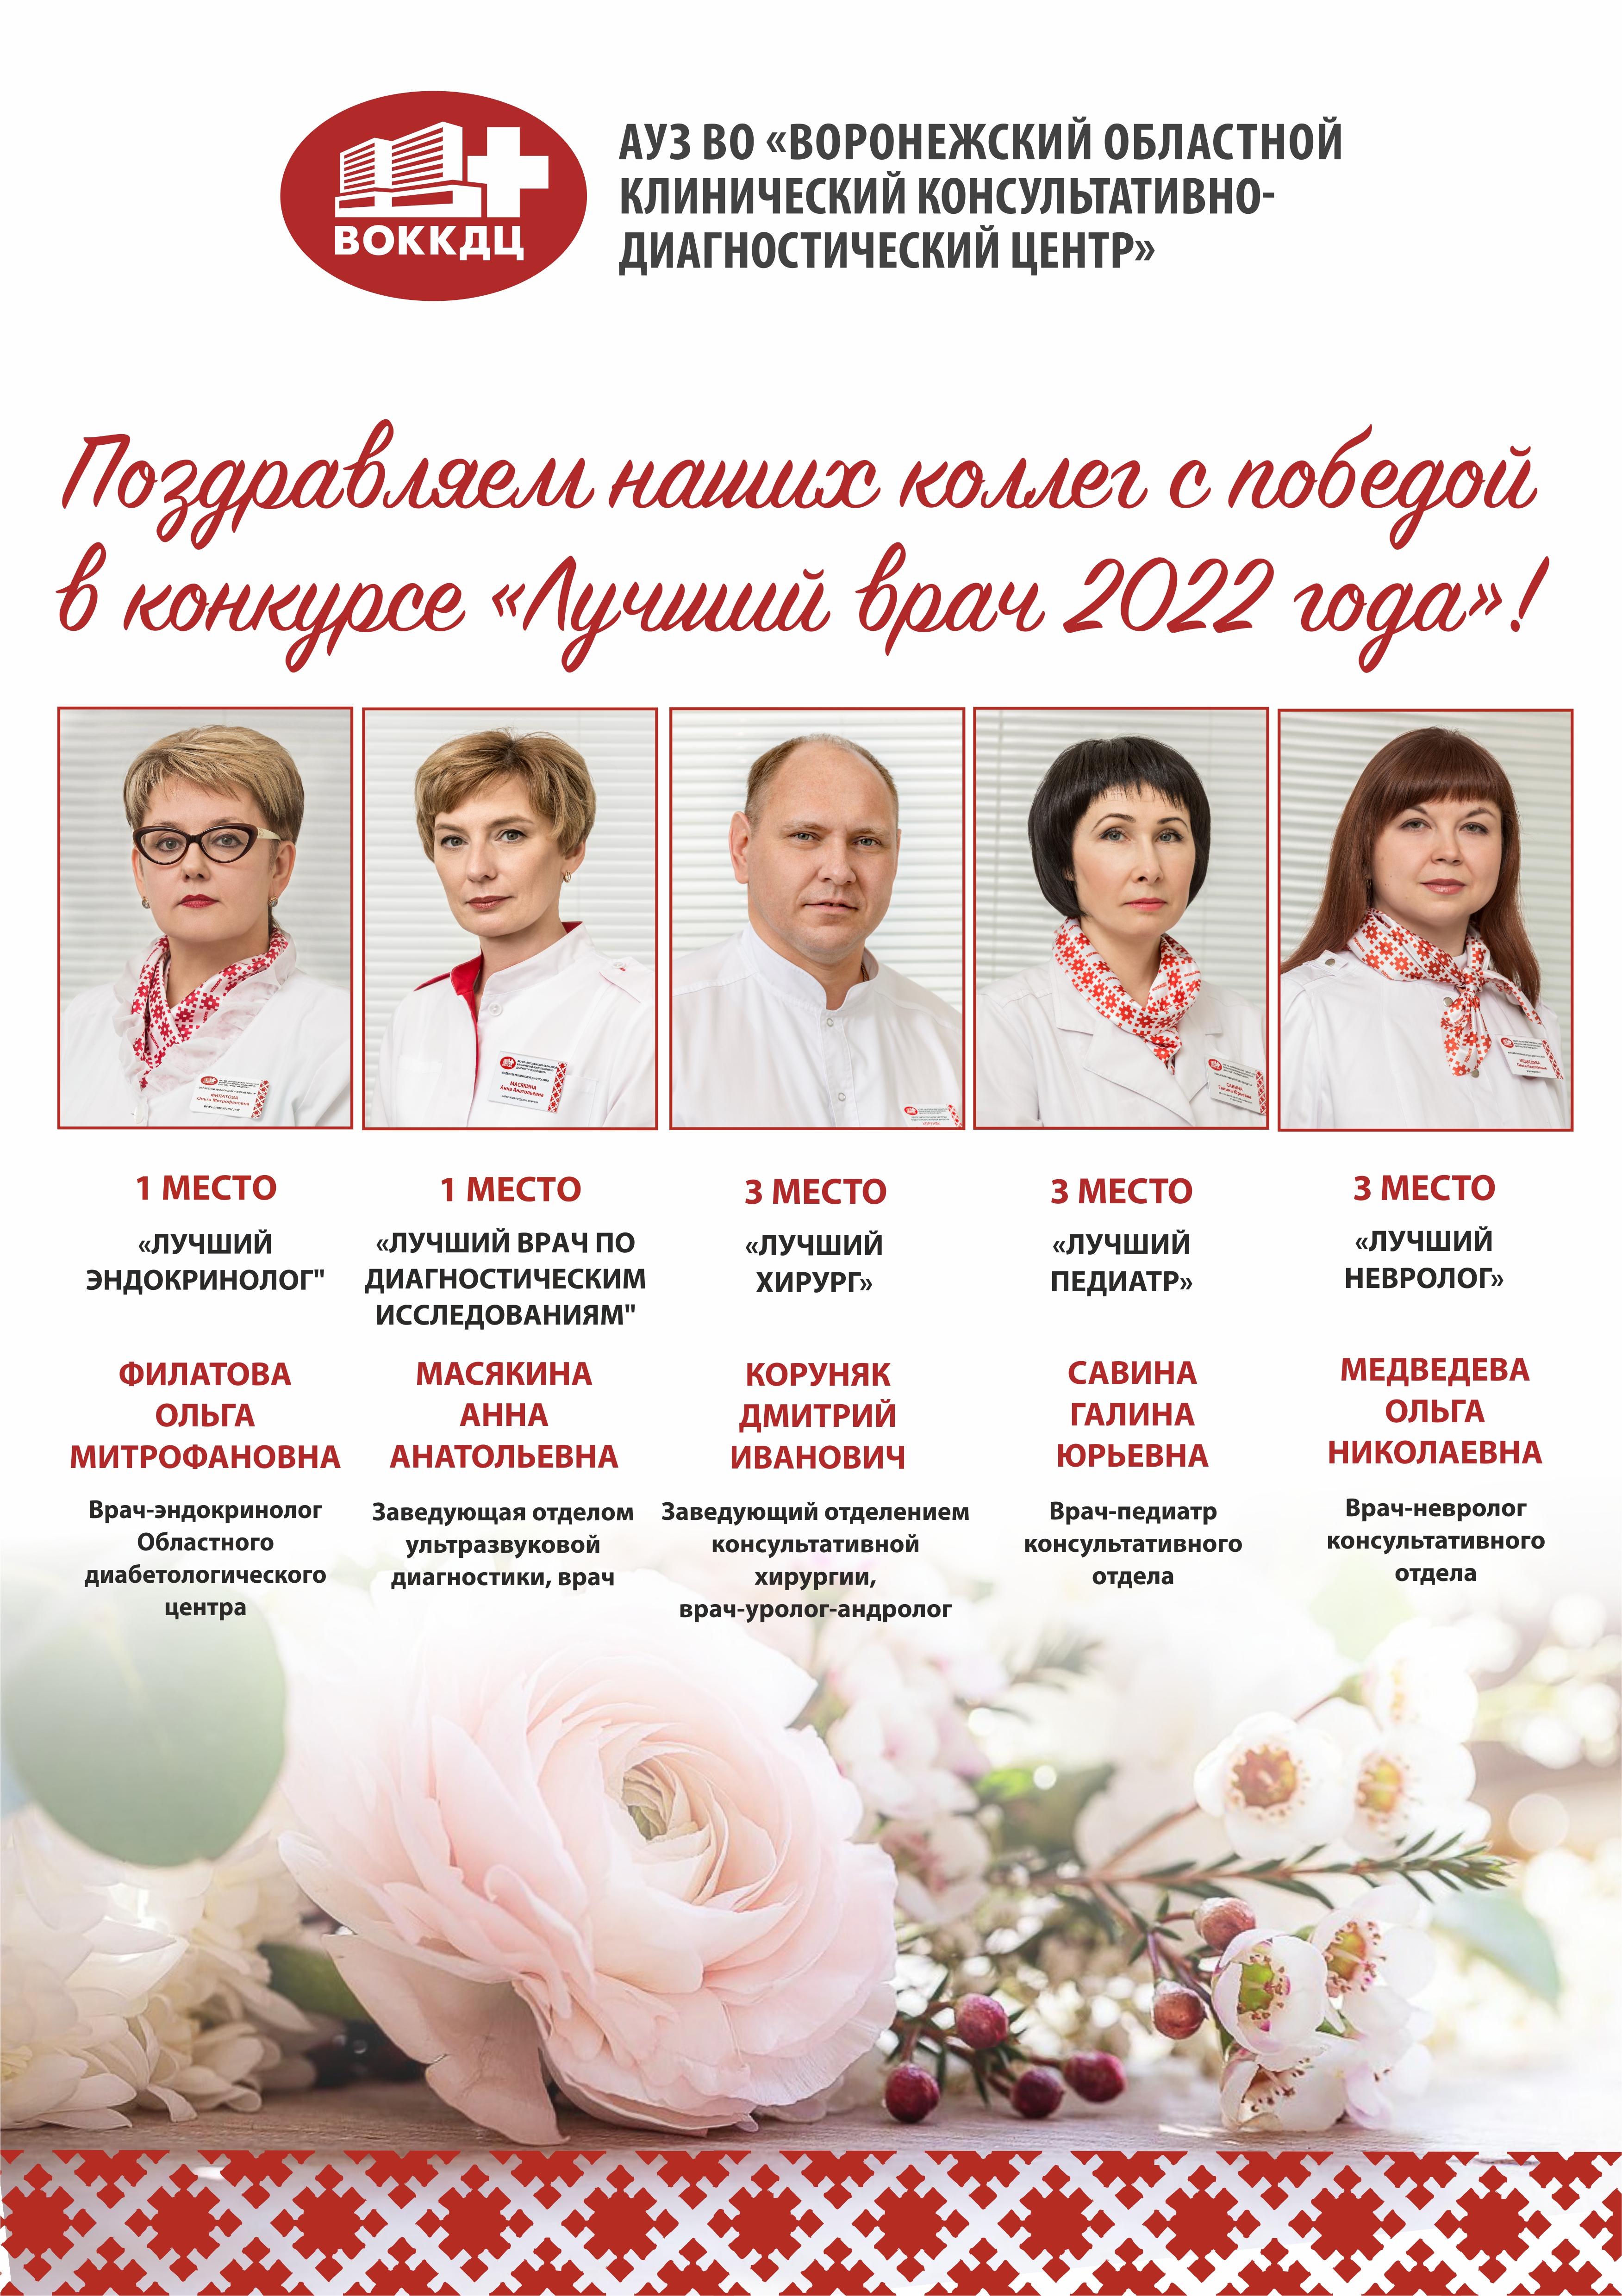 Победители конкурса "Лучший врач года 2022"